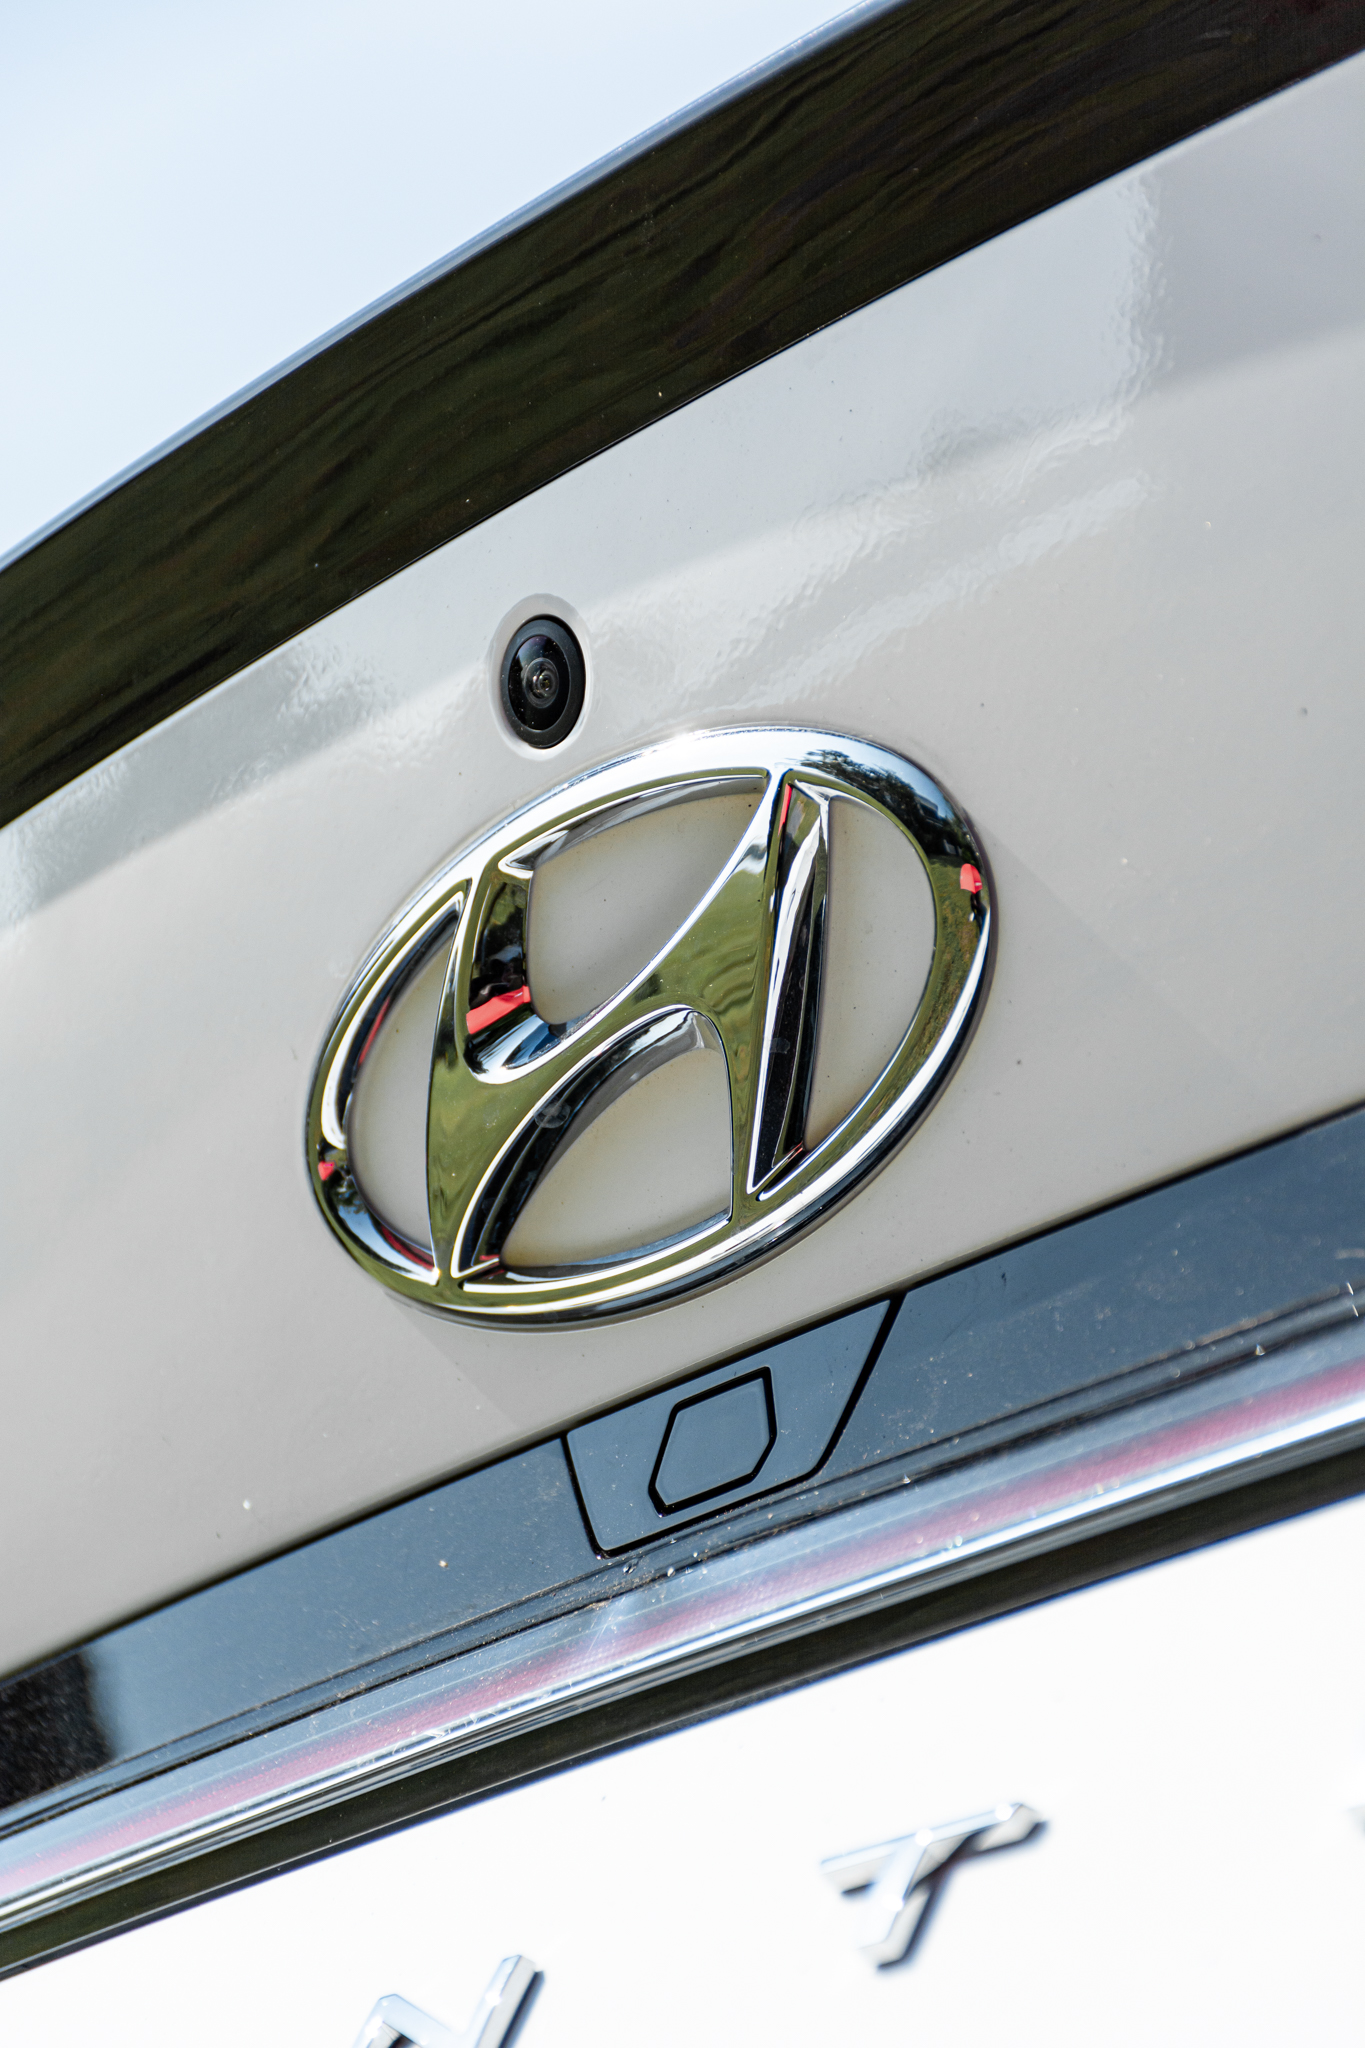 Đánh giá Hyundai Elantra N Line: Xe thể thao giá 799 triệu, mạnh và cảm xúc hơn Civic RS, còn điểm yếu công nghệ - Ảnh 9.